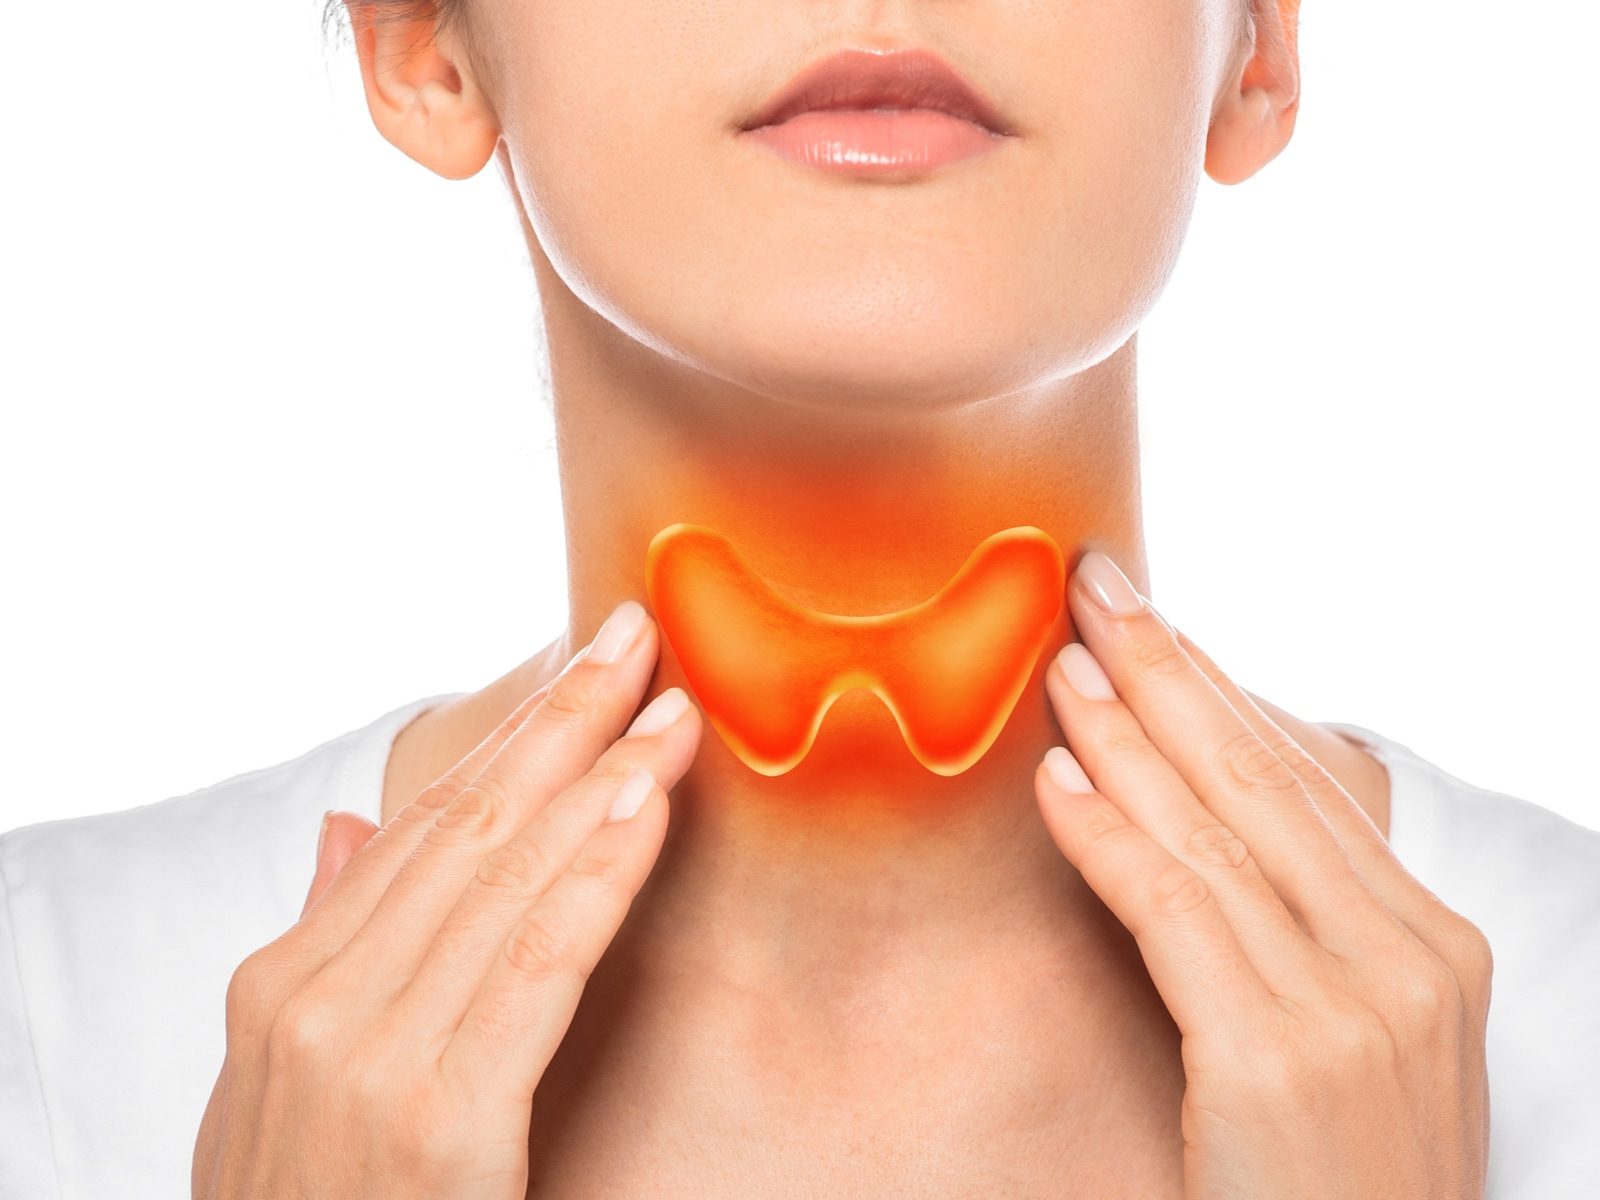 Thyroid Medication: ਥਾਇਰਾਇਡ ਦੀ ਦਵਾਈ ਲੈਣ ਤੋਂ ਪਹਿਲਾਂ ਇਨ੍ਹਾਂ ਗੱਲਾਂ ਦਾ ਰੱਖੋ ਧਿਆਨ